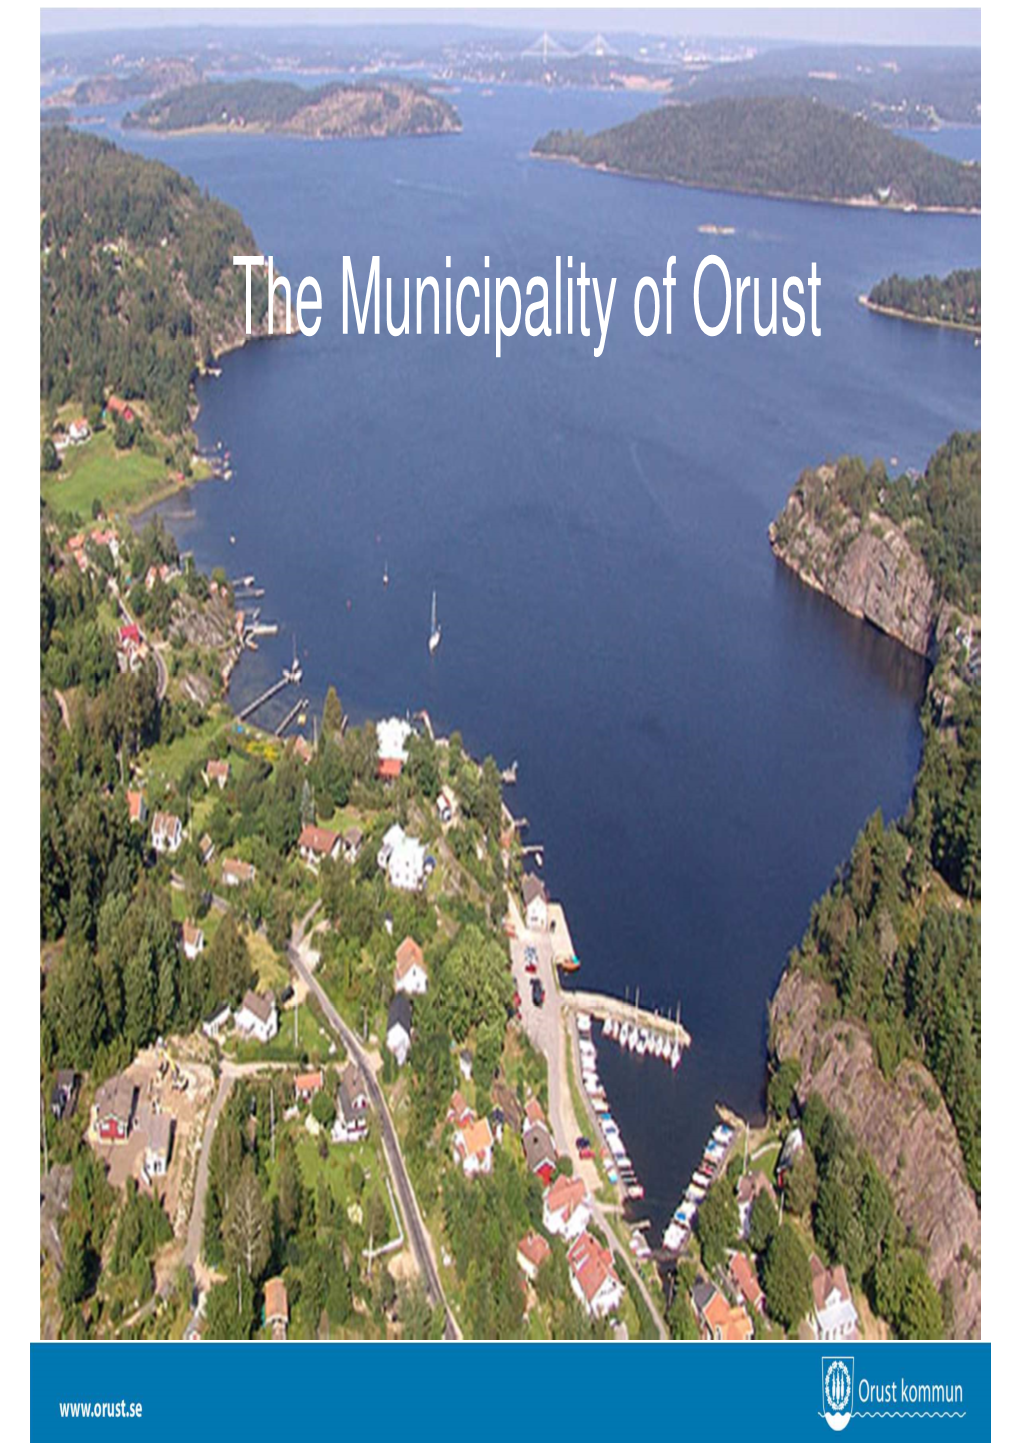 The Municipality of Orust